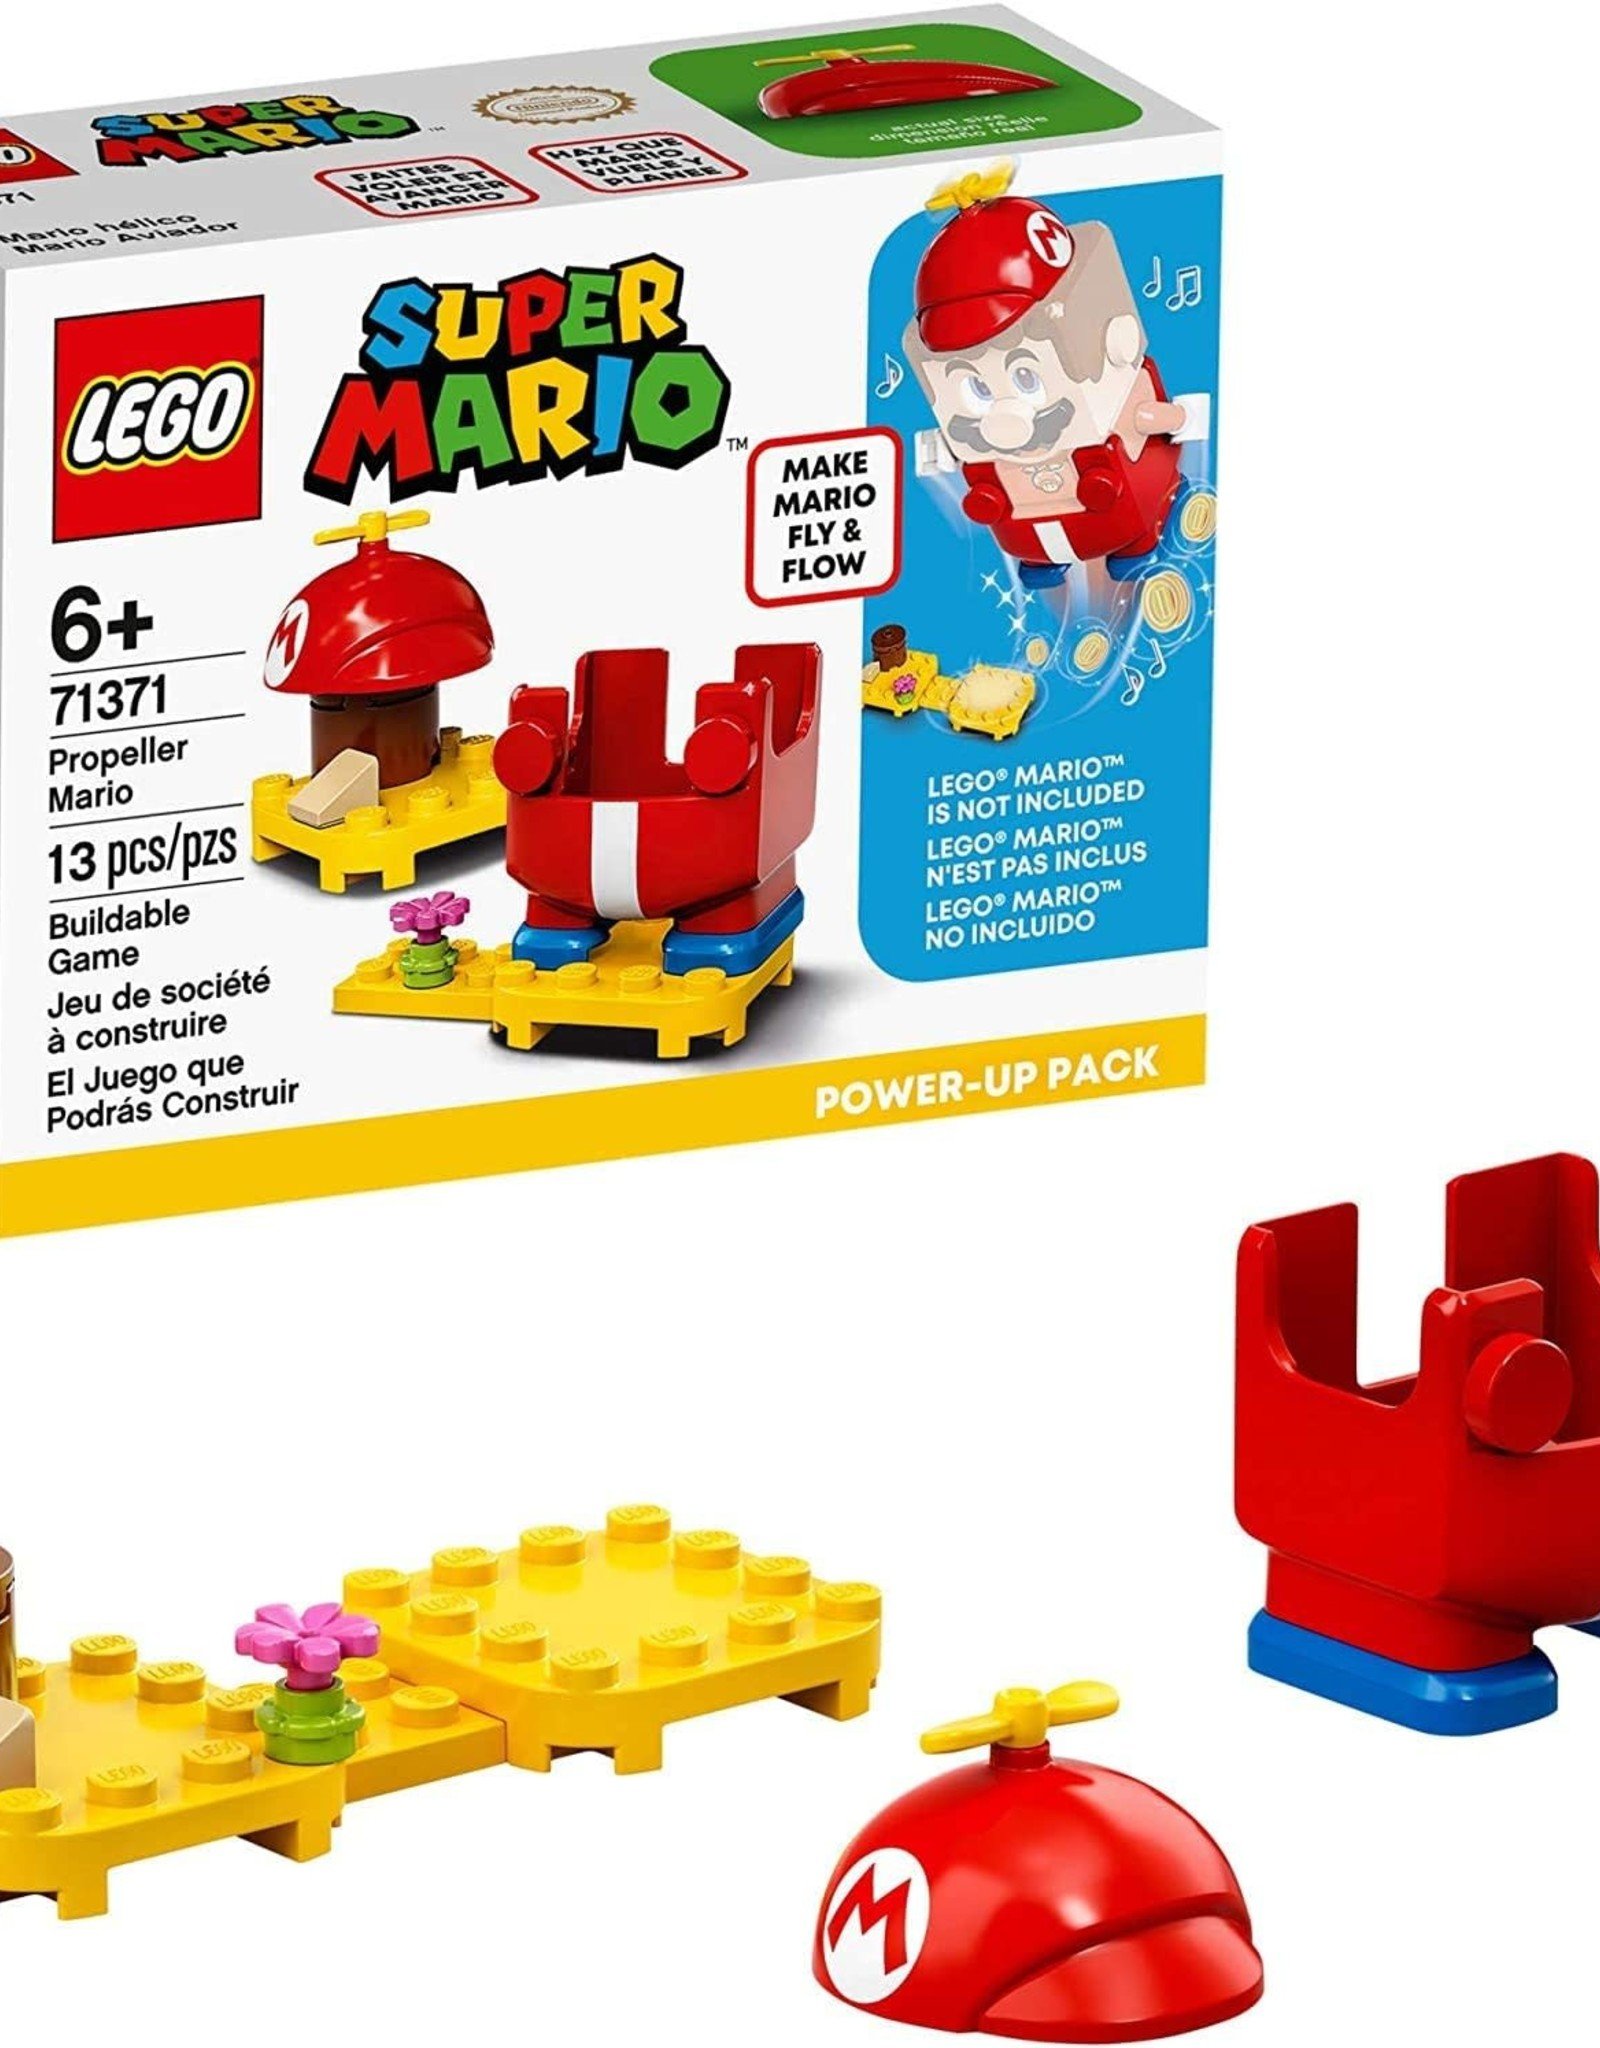 LEGO Classic Lego Super Mario Propeller Mario Power Up Pack